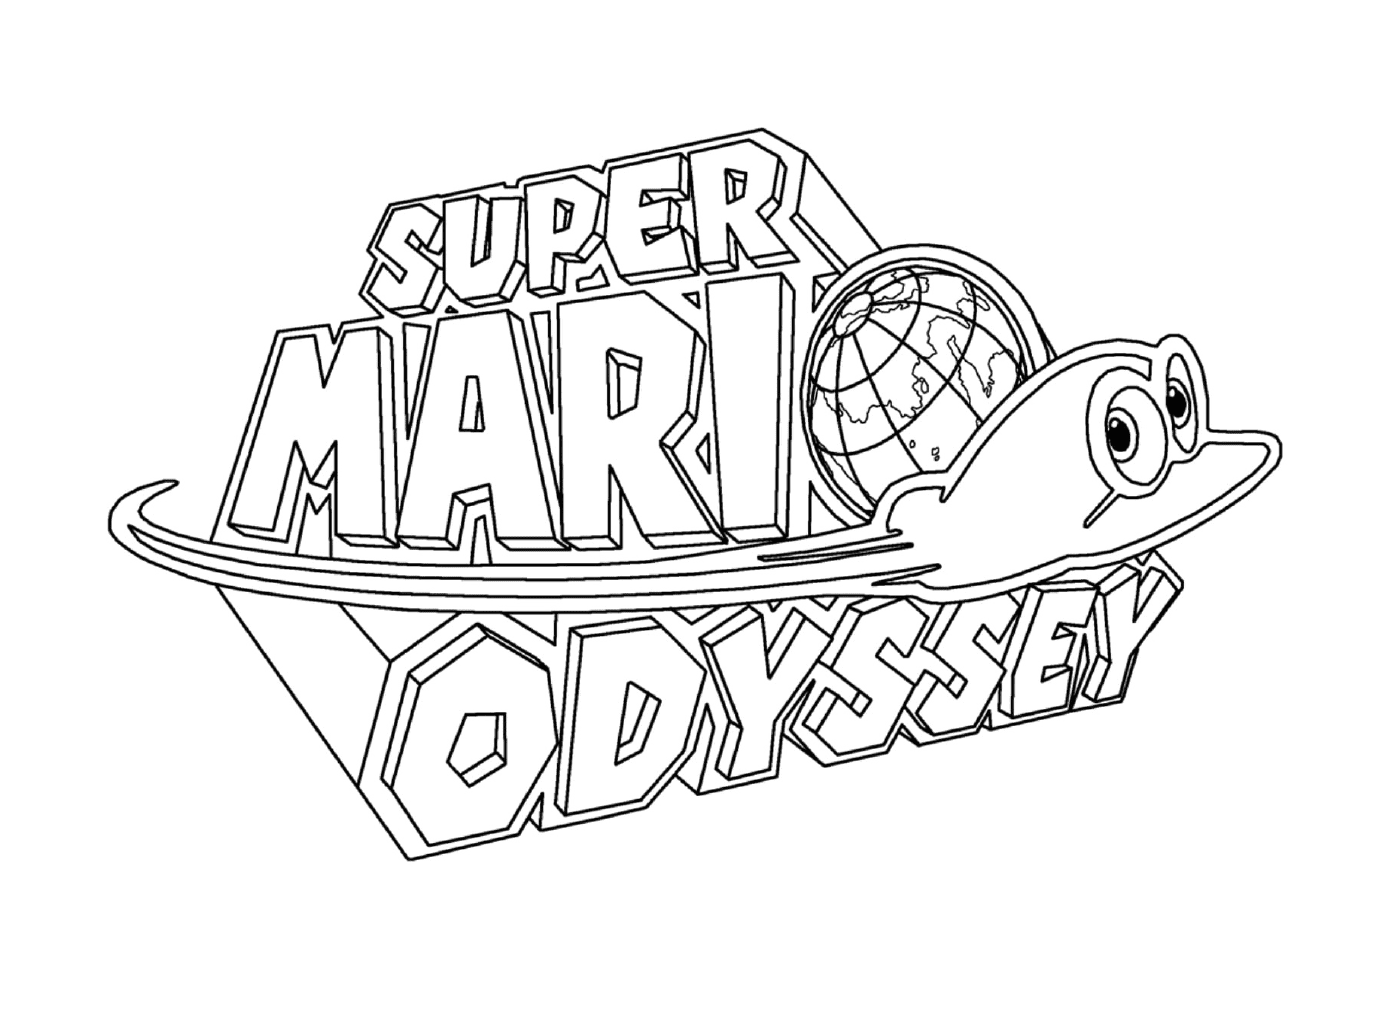   Le logo de Super Mario Odyssey de Nintendo 